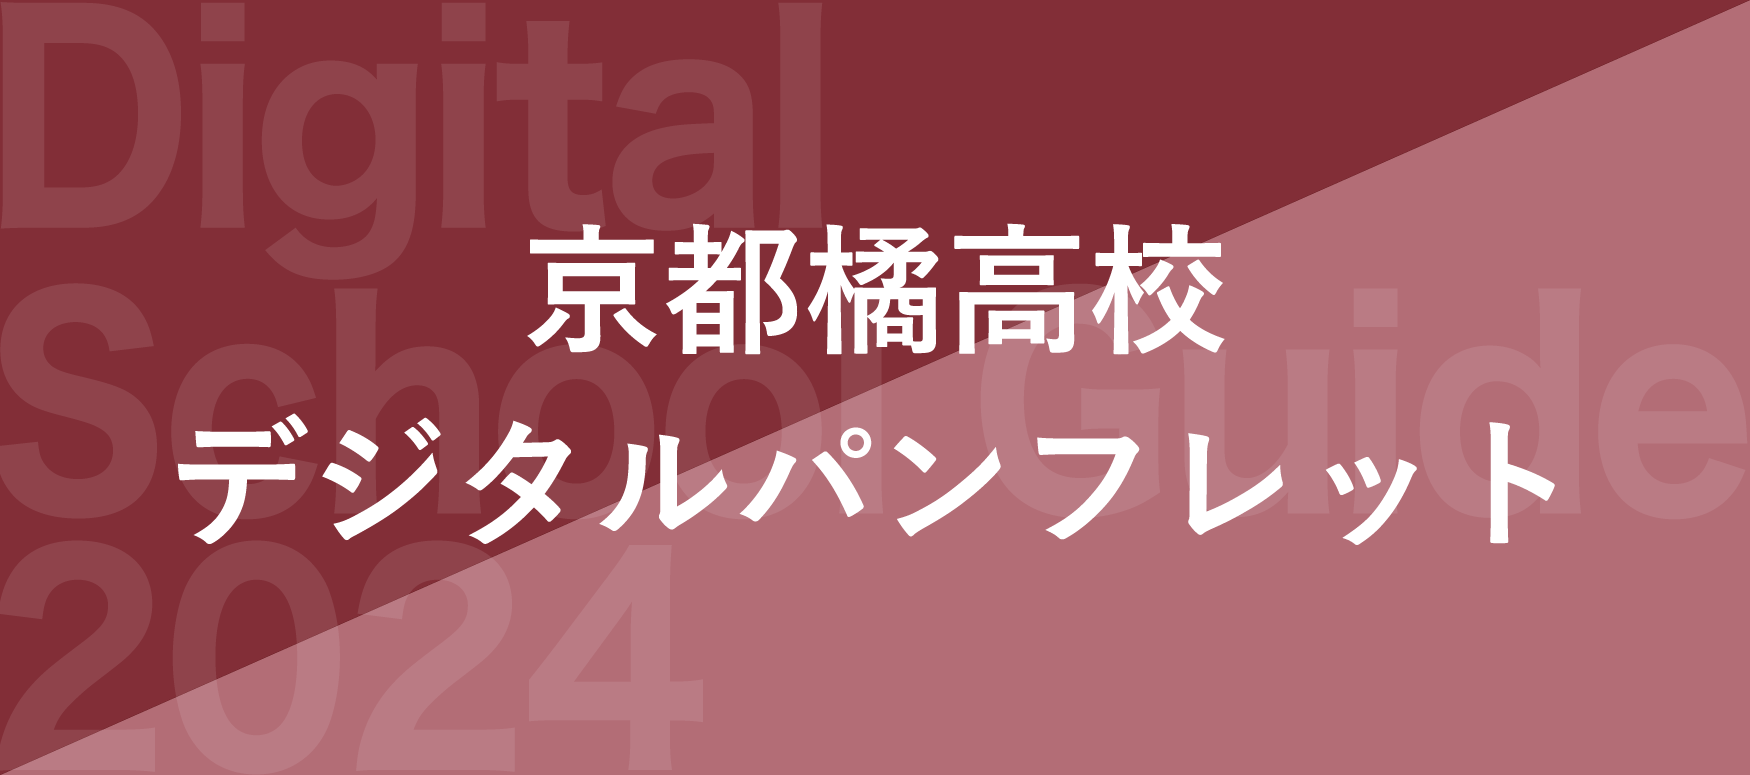 京都橘高校デジタルパンフレット